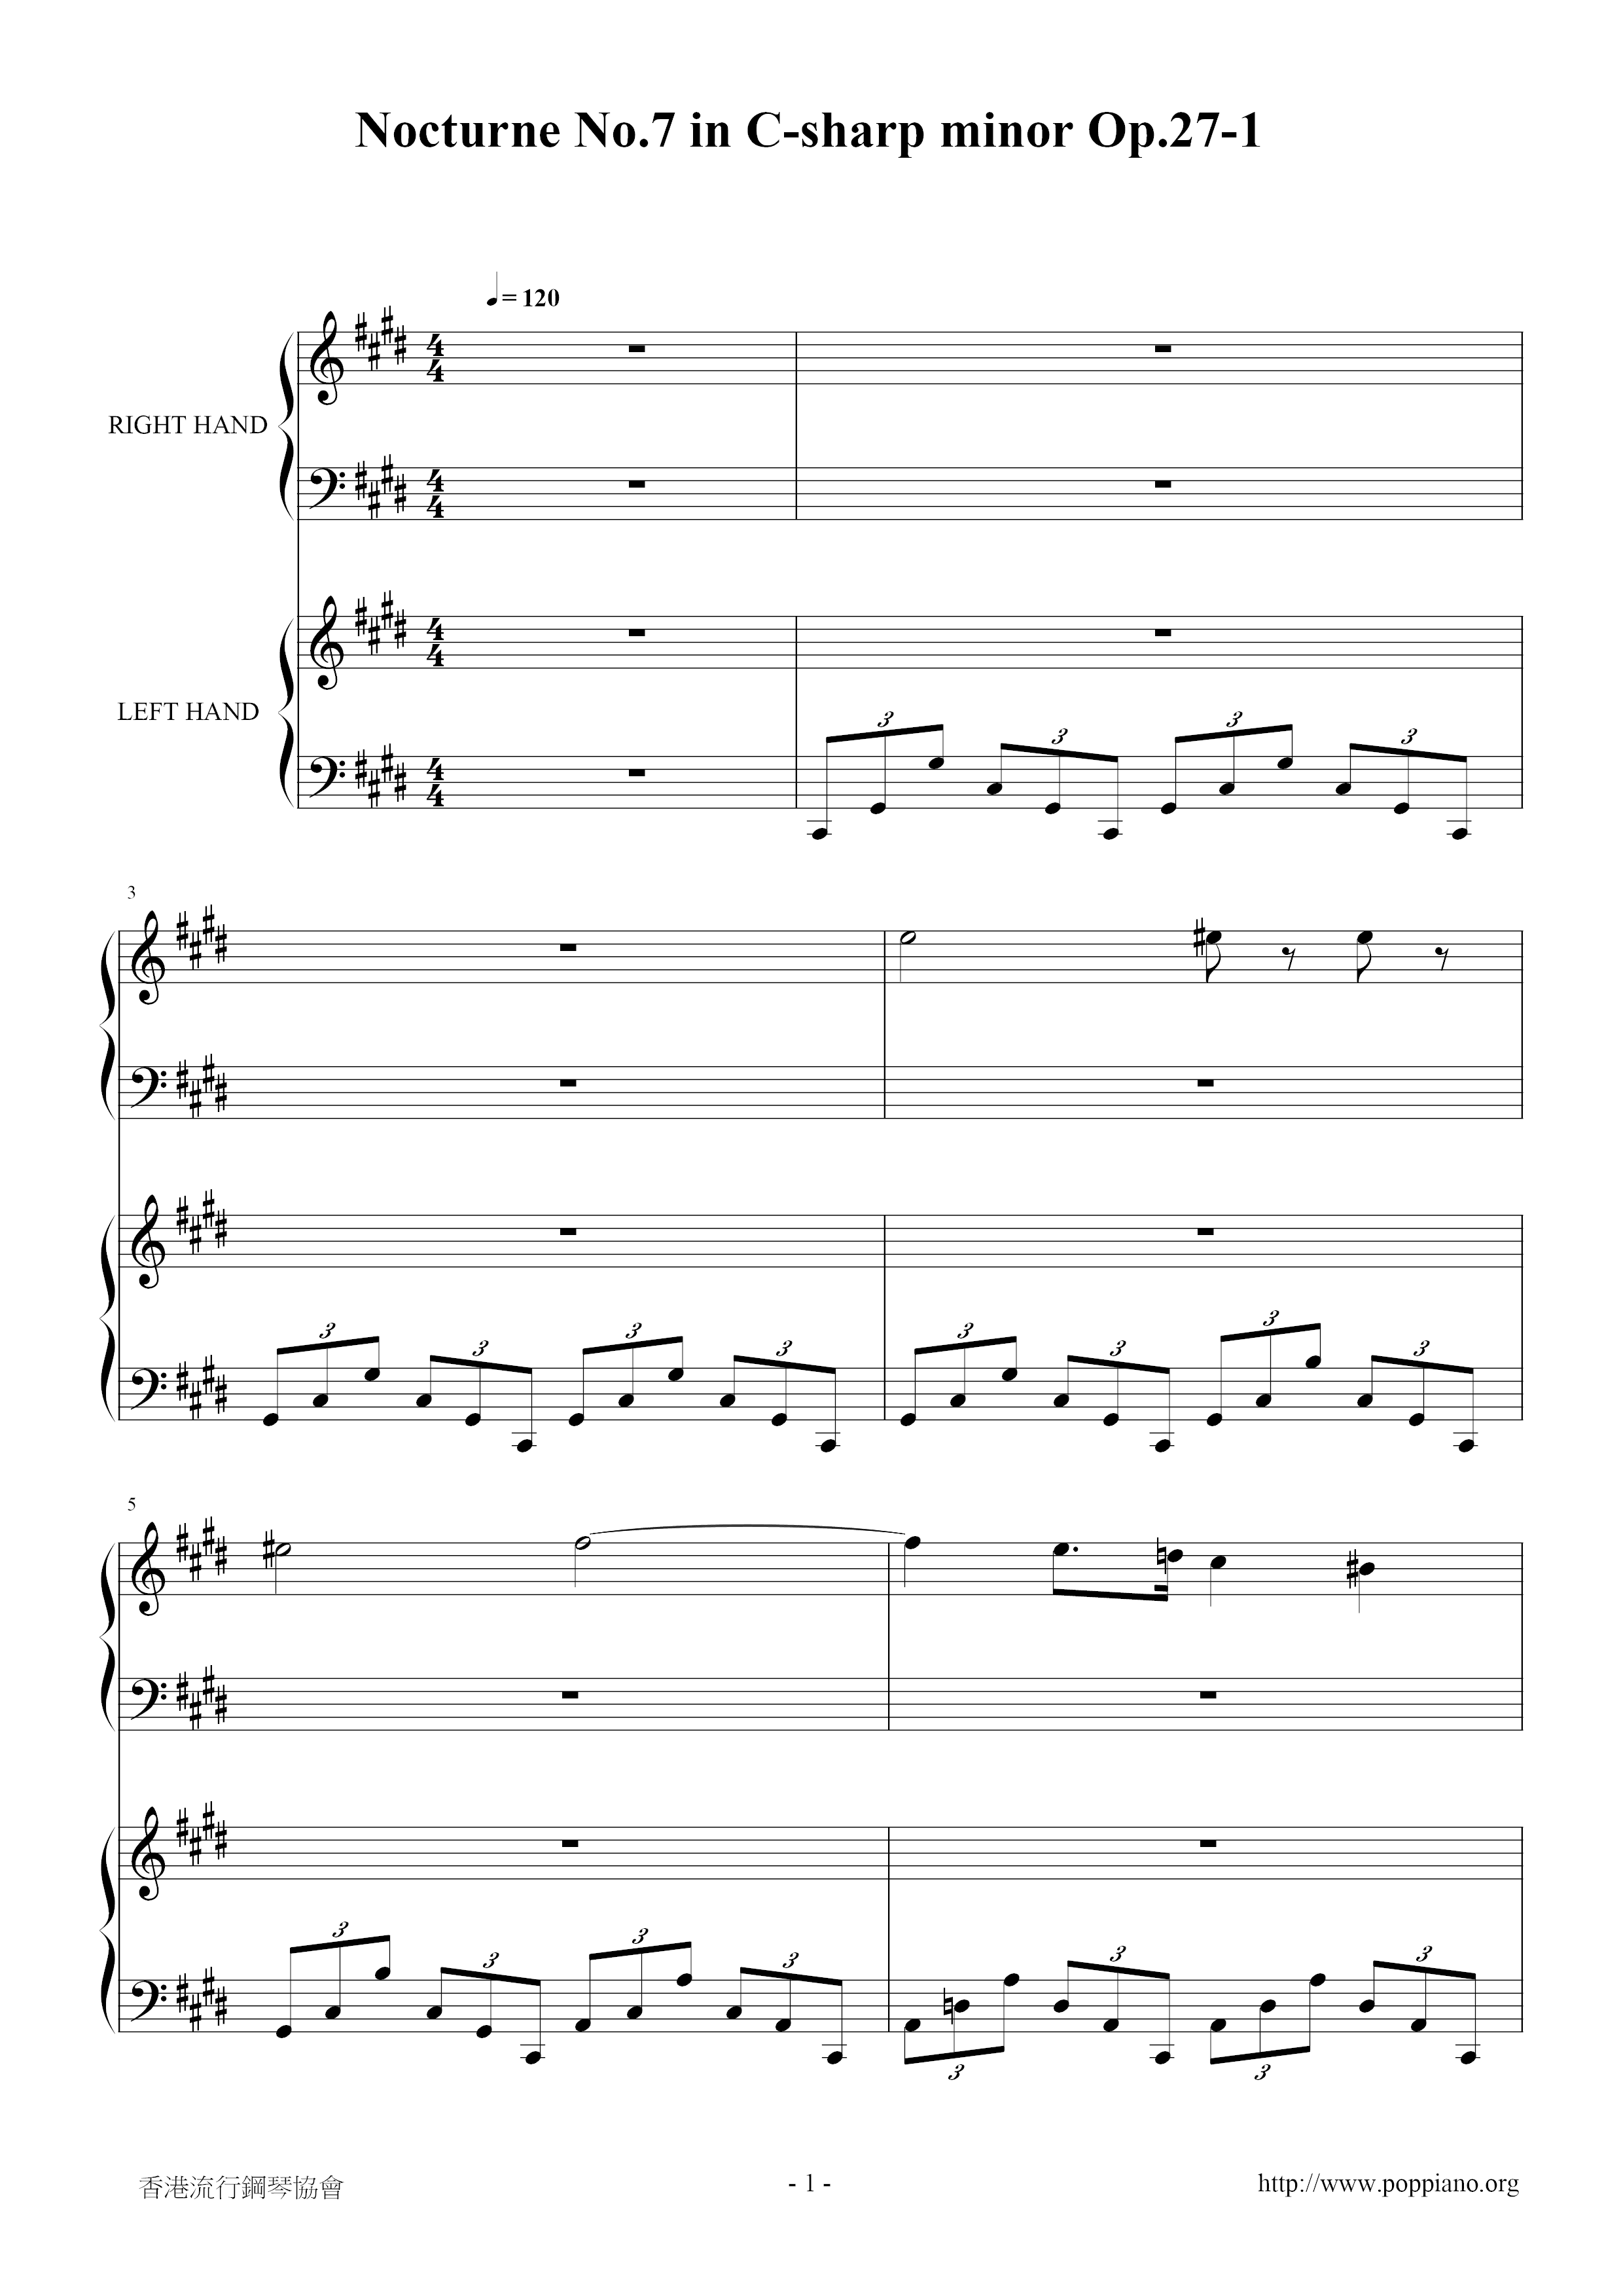 Nocturne No. 07, Op. 27-1 in C# Minor琴譜